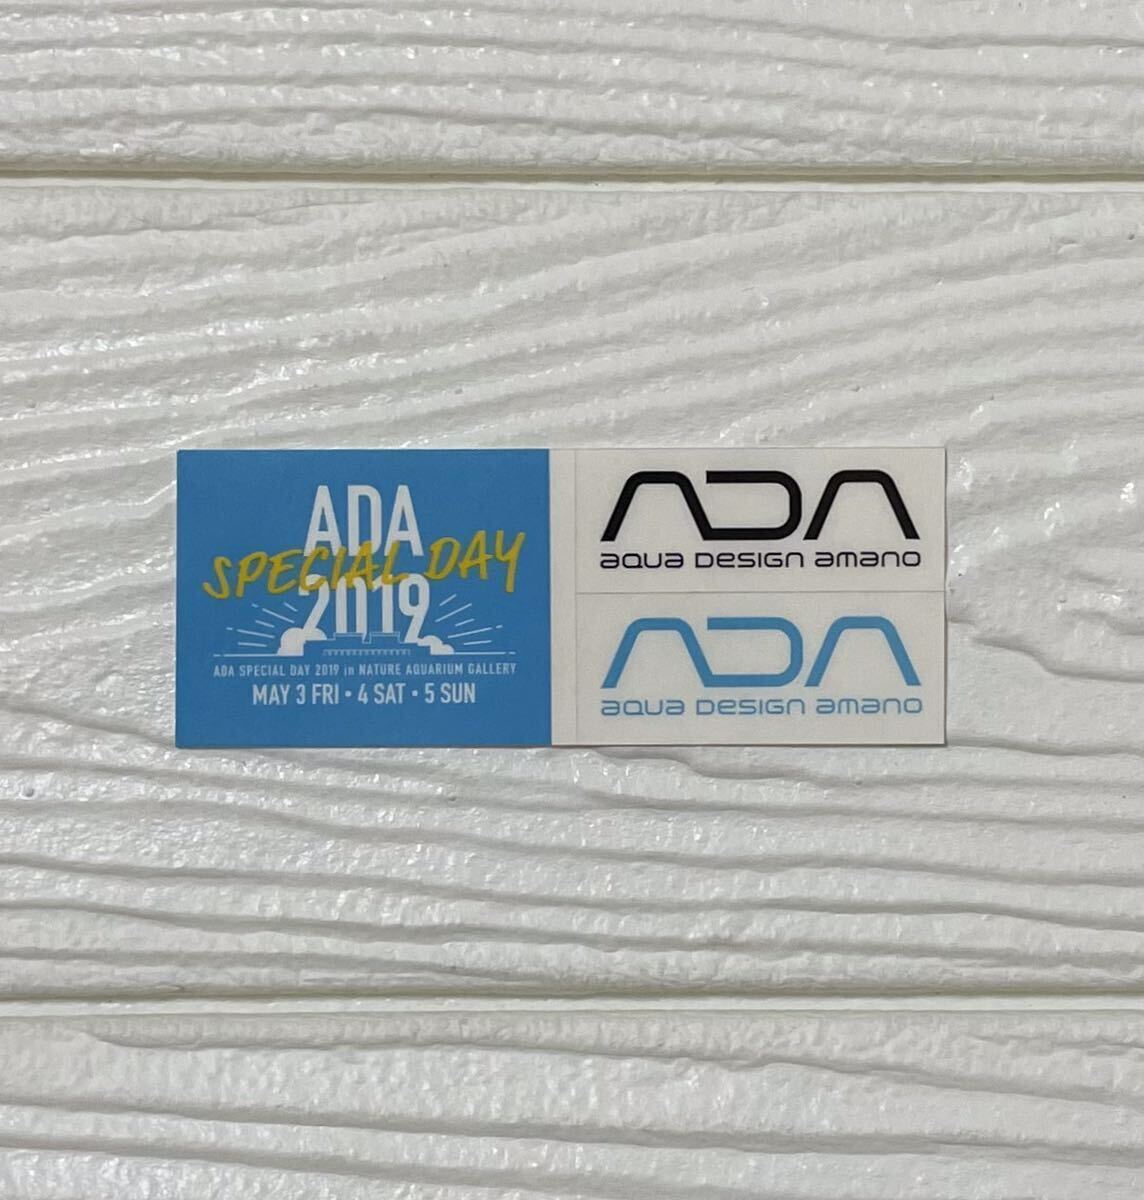 [ супер редкий ]ADA aqua дизайн amano стикер nature аквариум SPECIAL DAY 2019 специальный tei небо . более того 